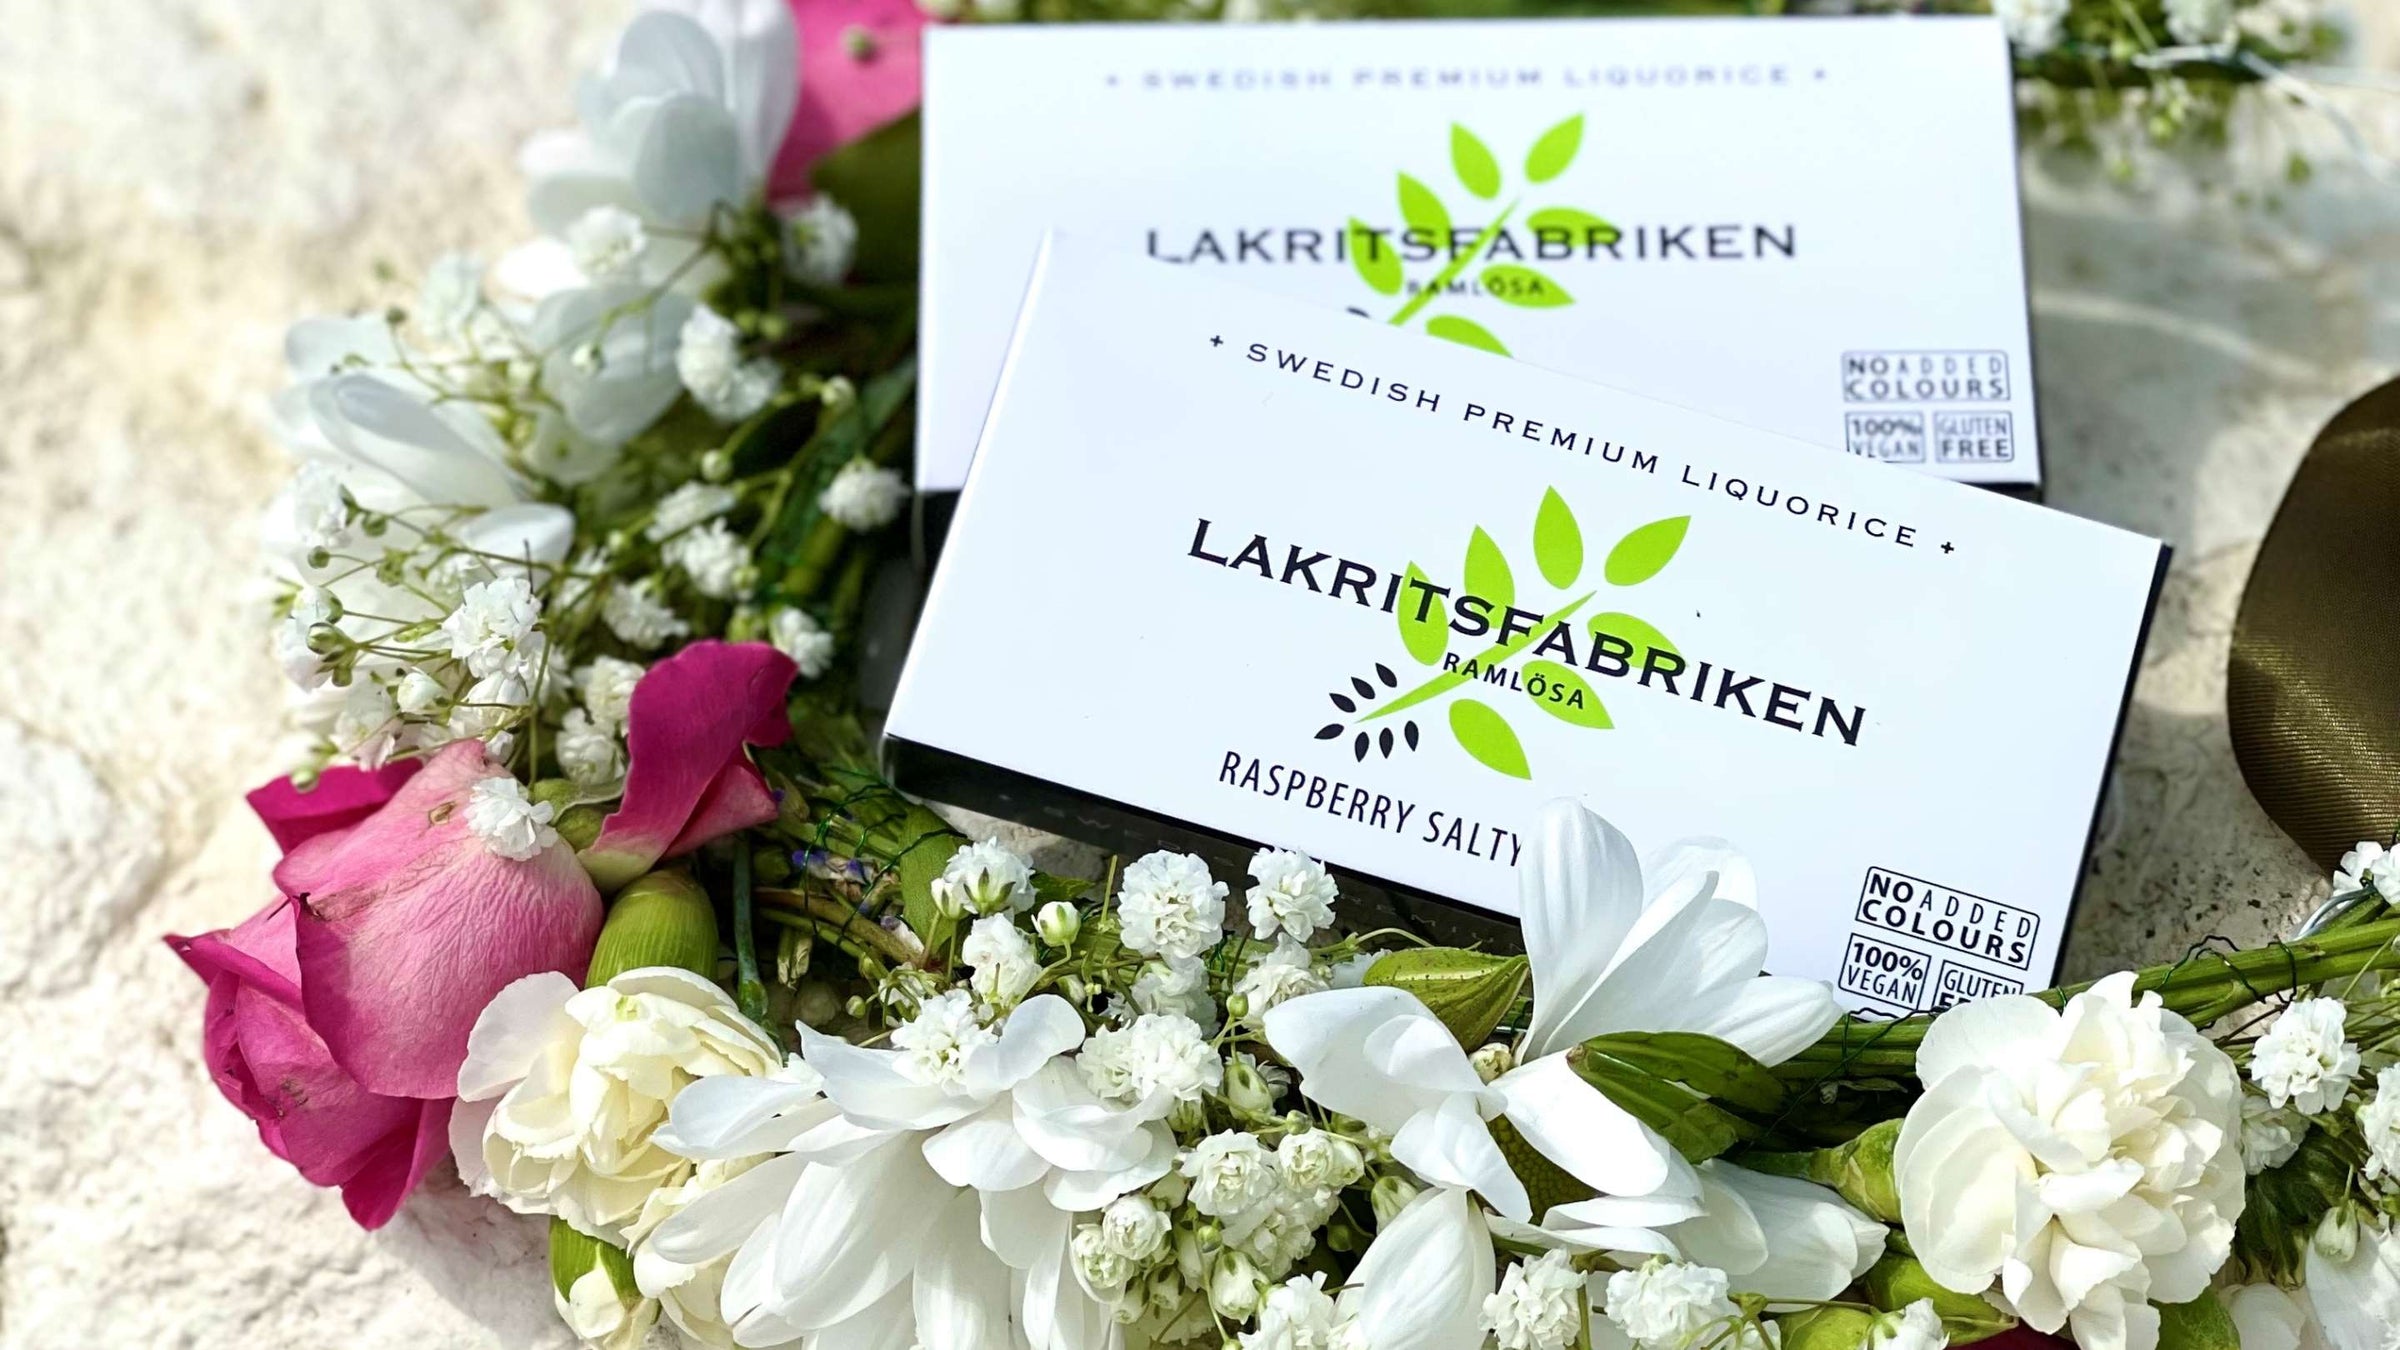 Lakritsfabriken - Swedish Premium liquorice - in uk stock